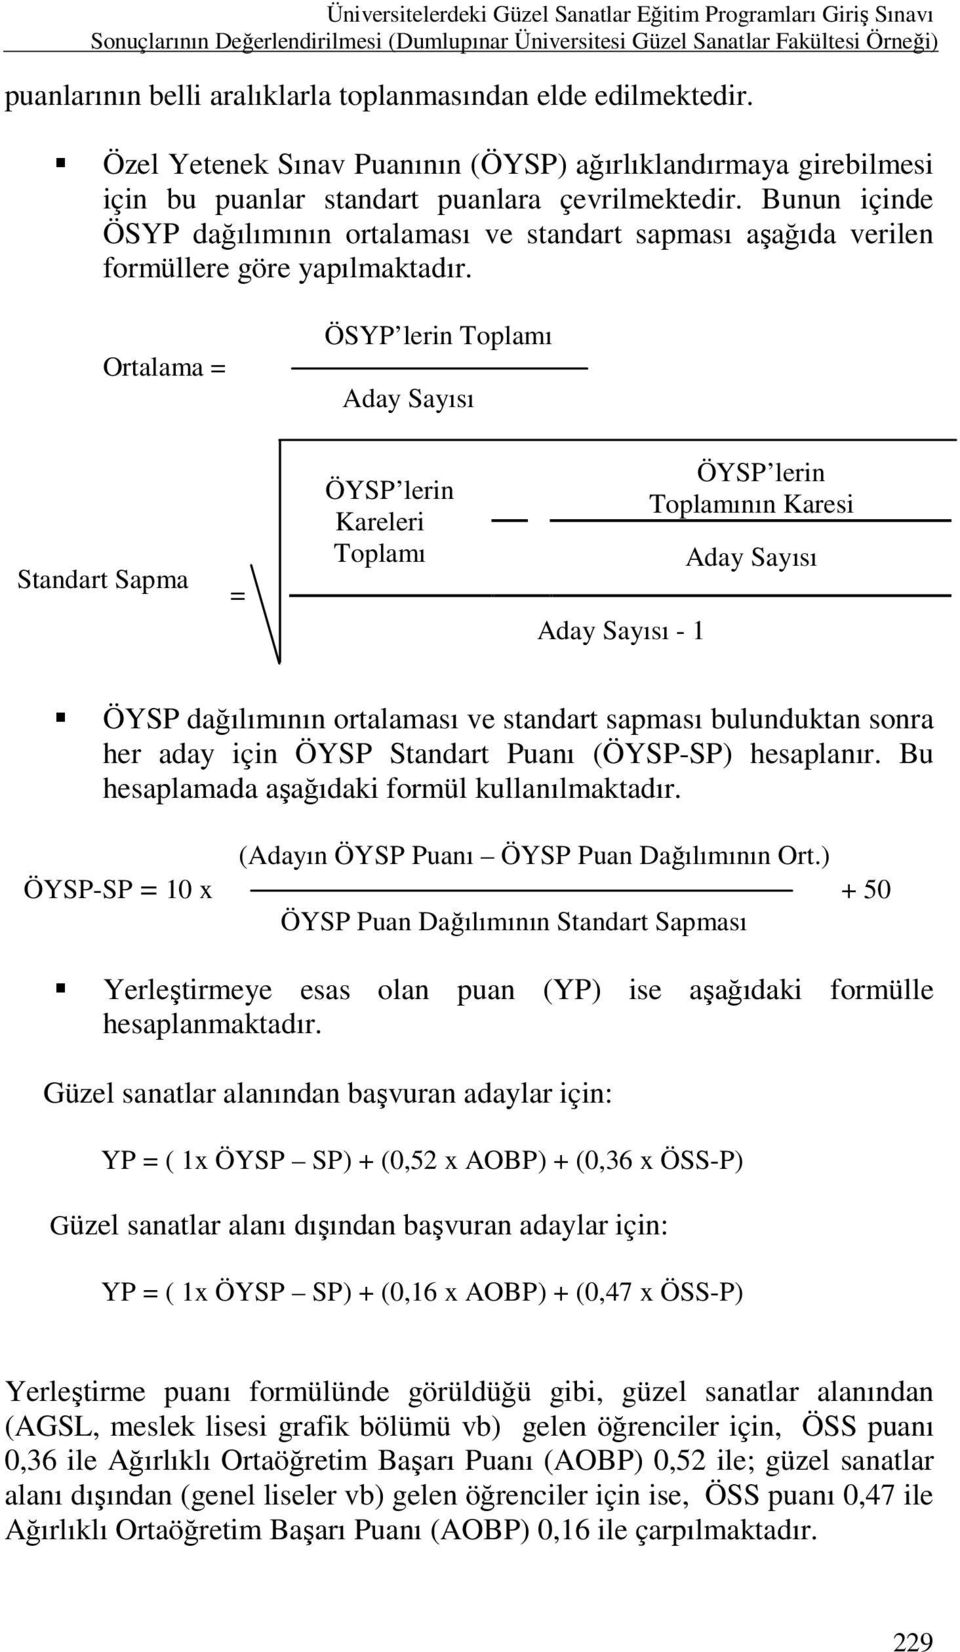 Bunun içinde ÖSYP dağılımının ortalaması ve standart sapması aşağıda verilen formüllere göre yapılmaktadır.